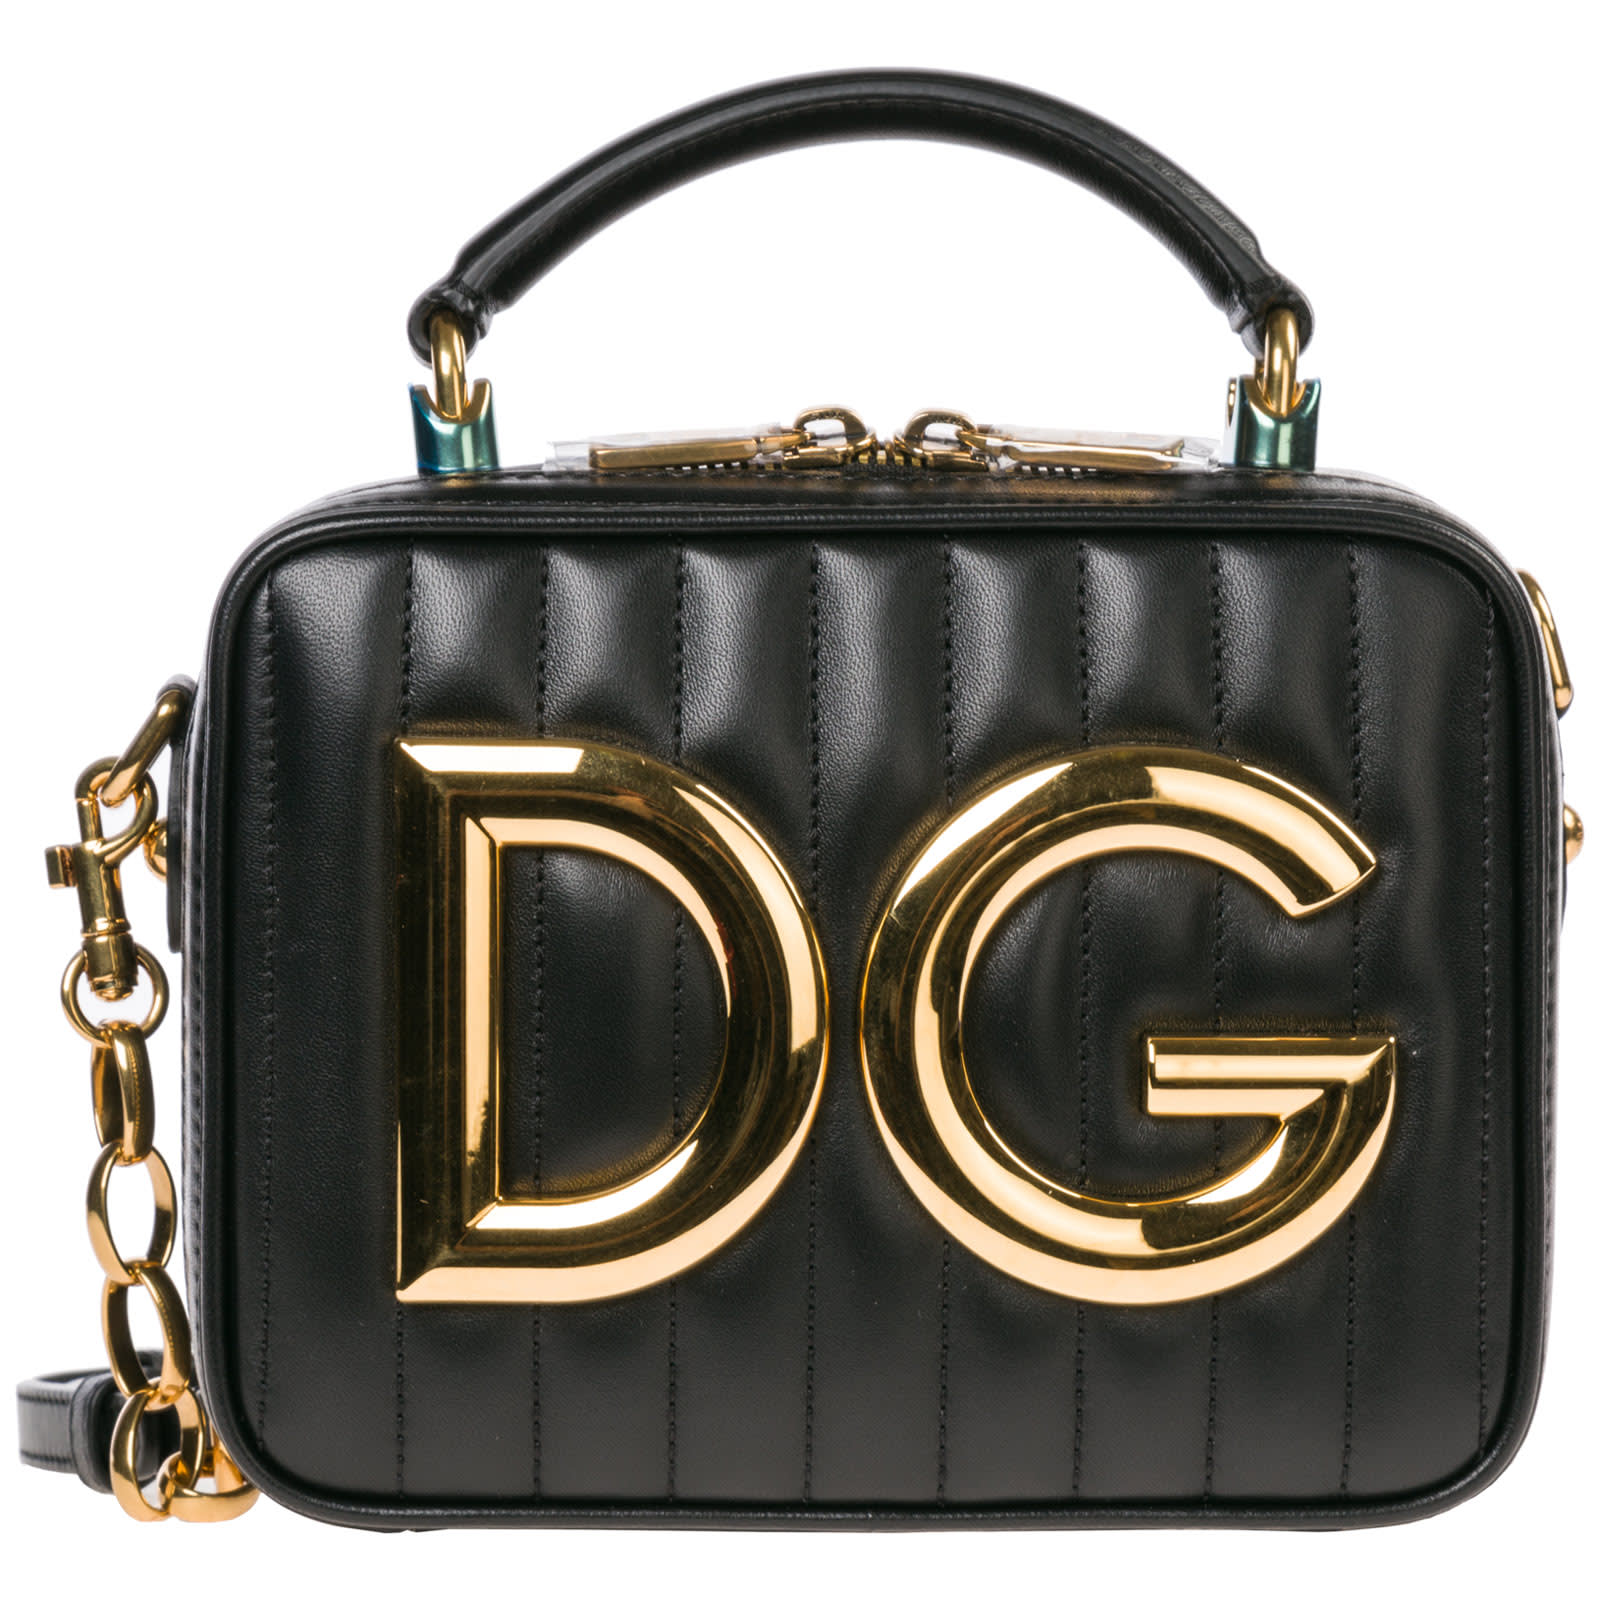 Dolce & Gabbana Dolce & Gabbana Leather Handbag Shopping Bag Purse Dg ...